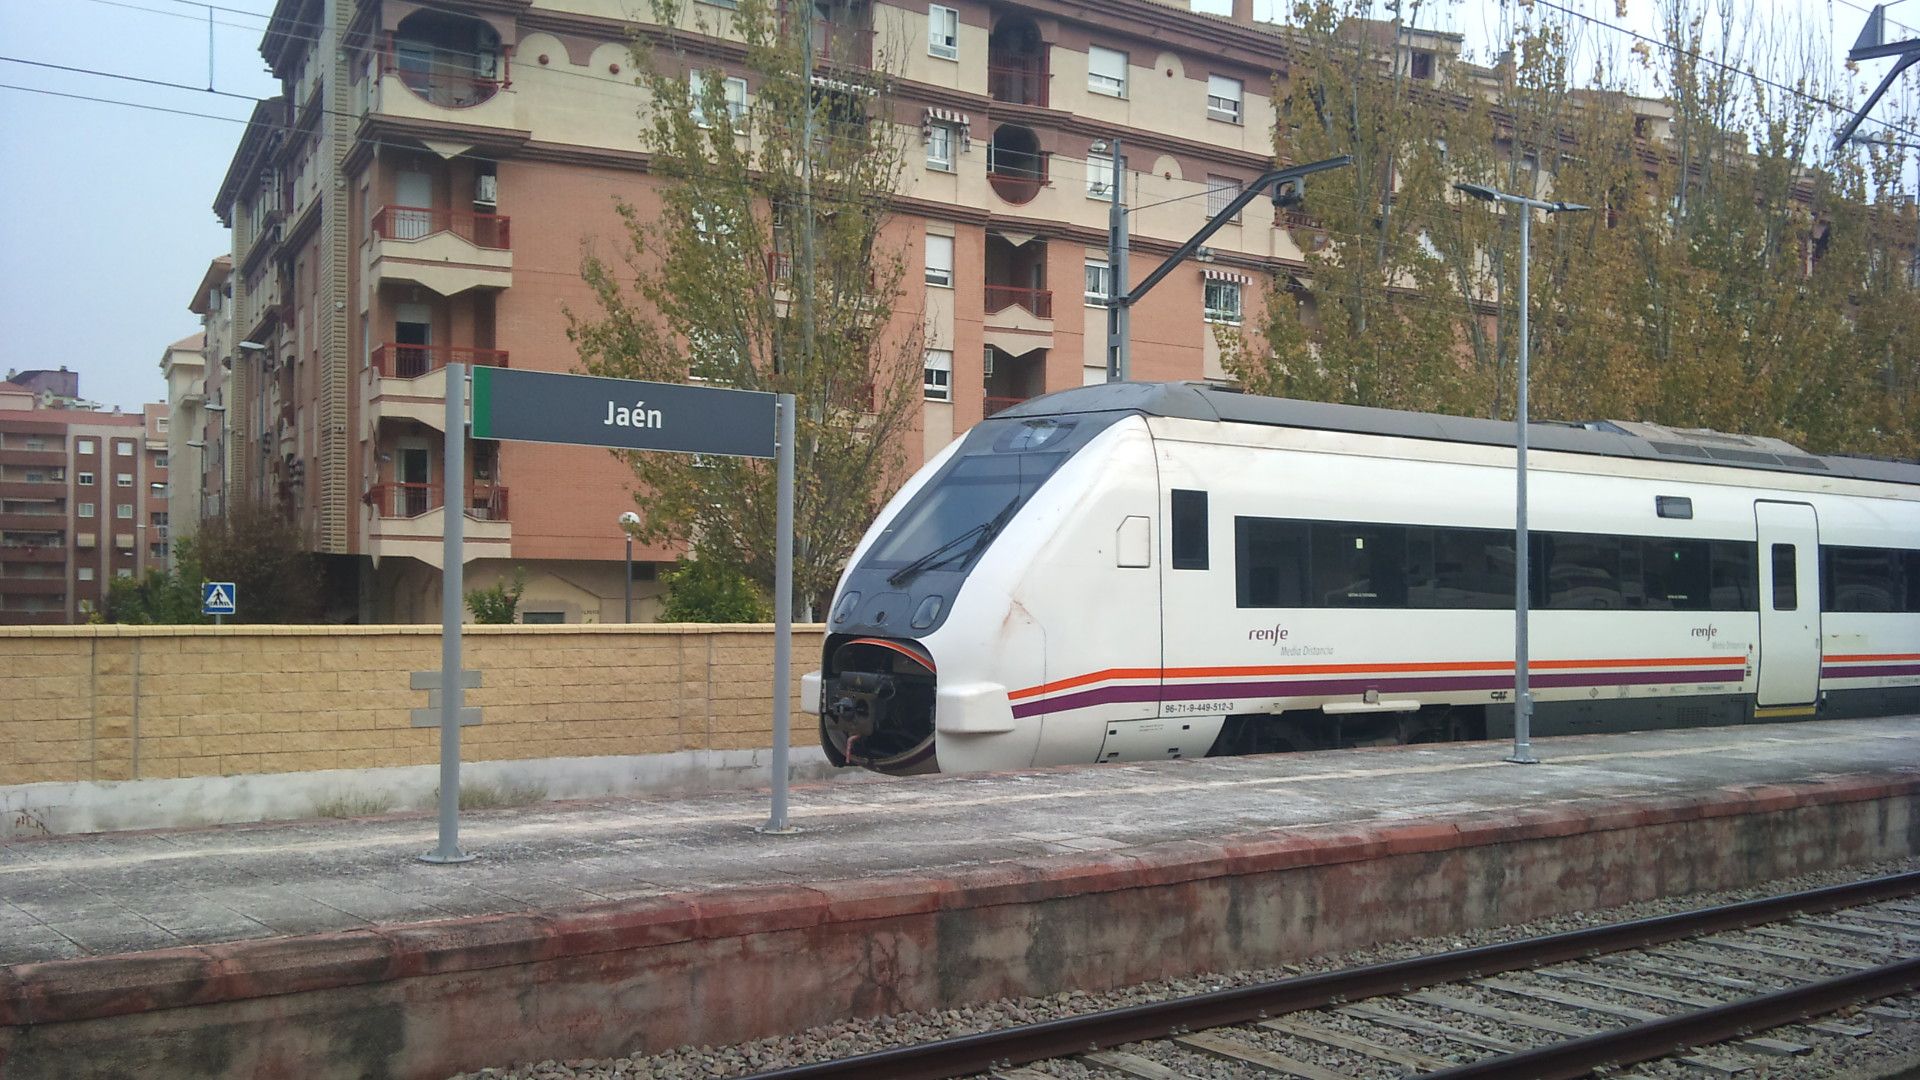 CRÓNICA DEL DÍA: El CES provincial afirma con claridad que “el tren evita a Jaén”